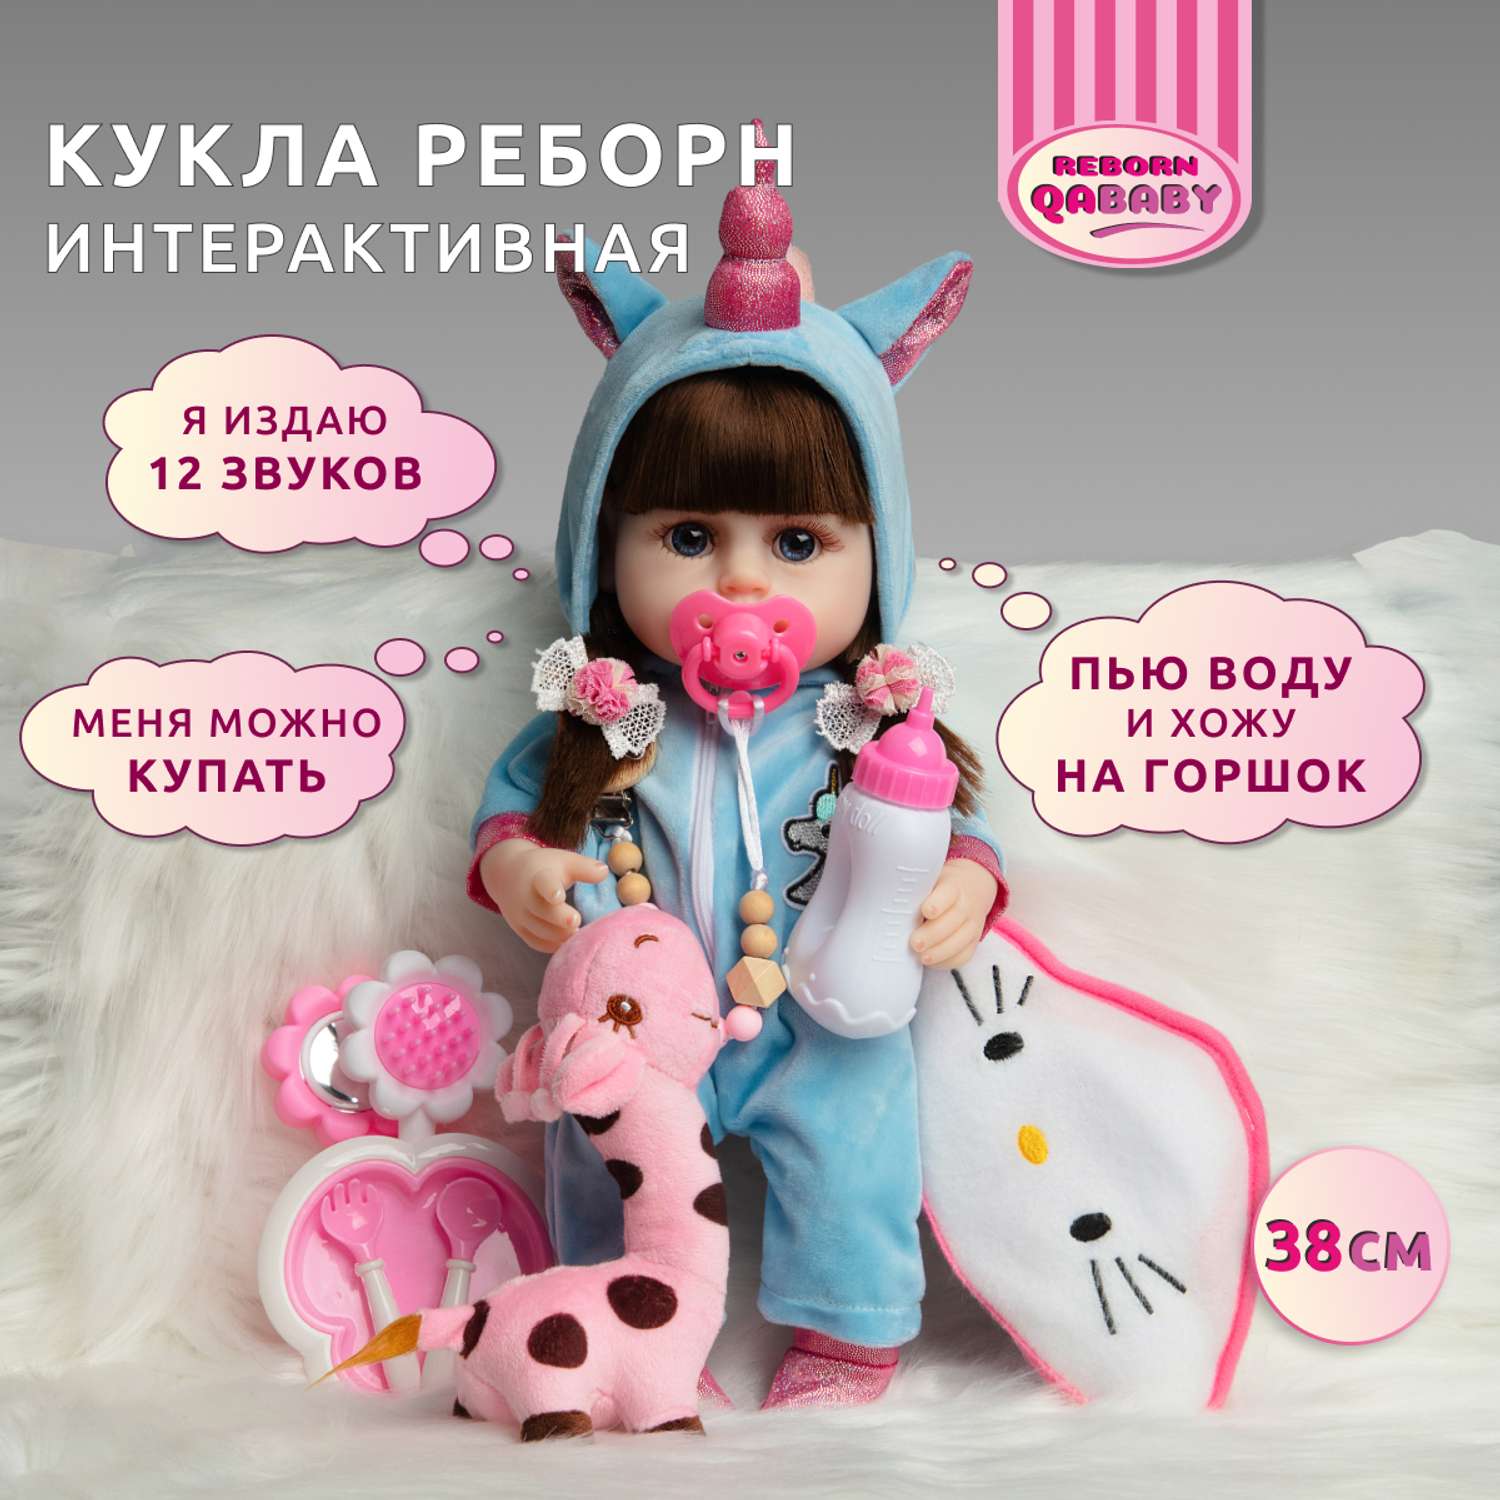 Кукла Реборн QA BABY Марта девочка интерактивная Пупс набор игрушки для ванной для девочки 38 см 3806 - фото 1